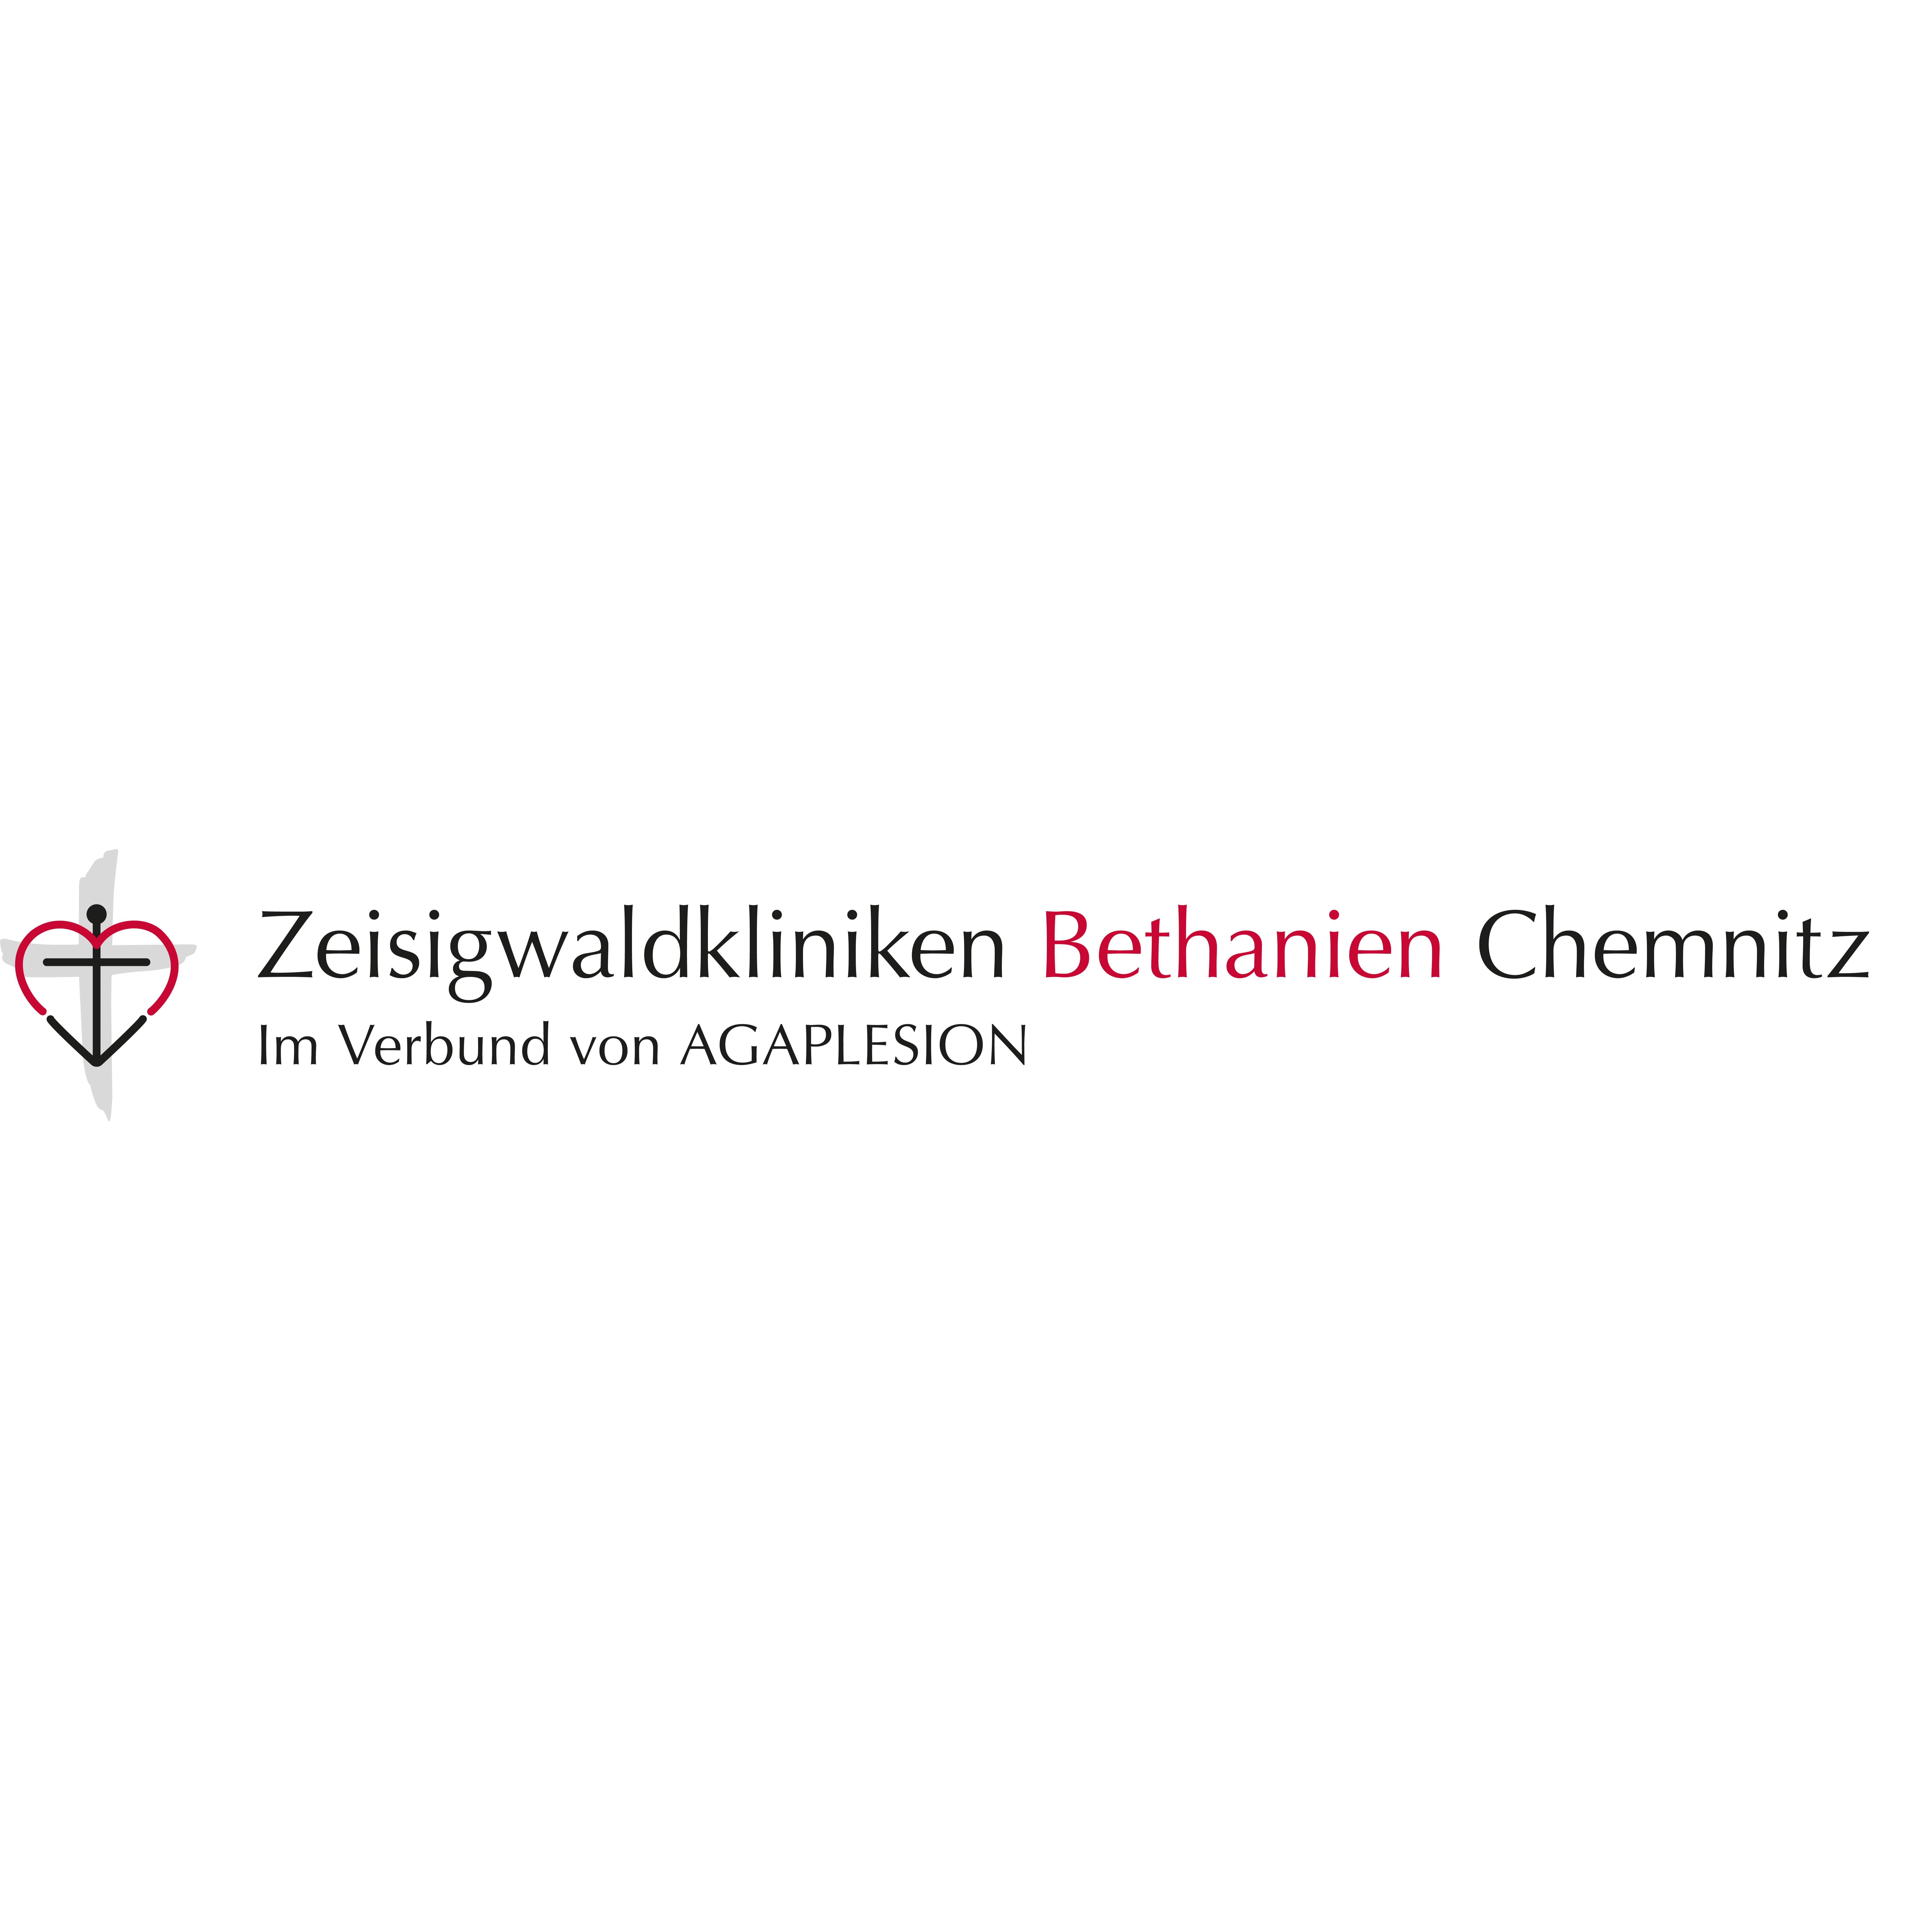 Klinik für Orthopädie, Unfall- und Wiederherstellungschirurgie, Zeisigwaldkliniken Bethanien Chemnitz  